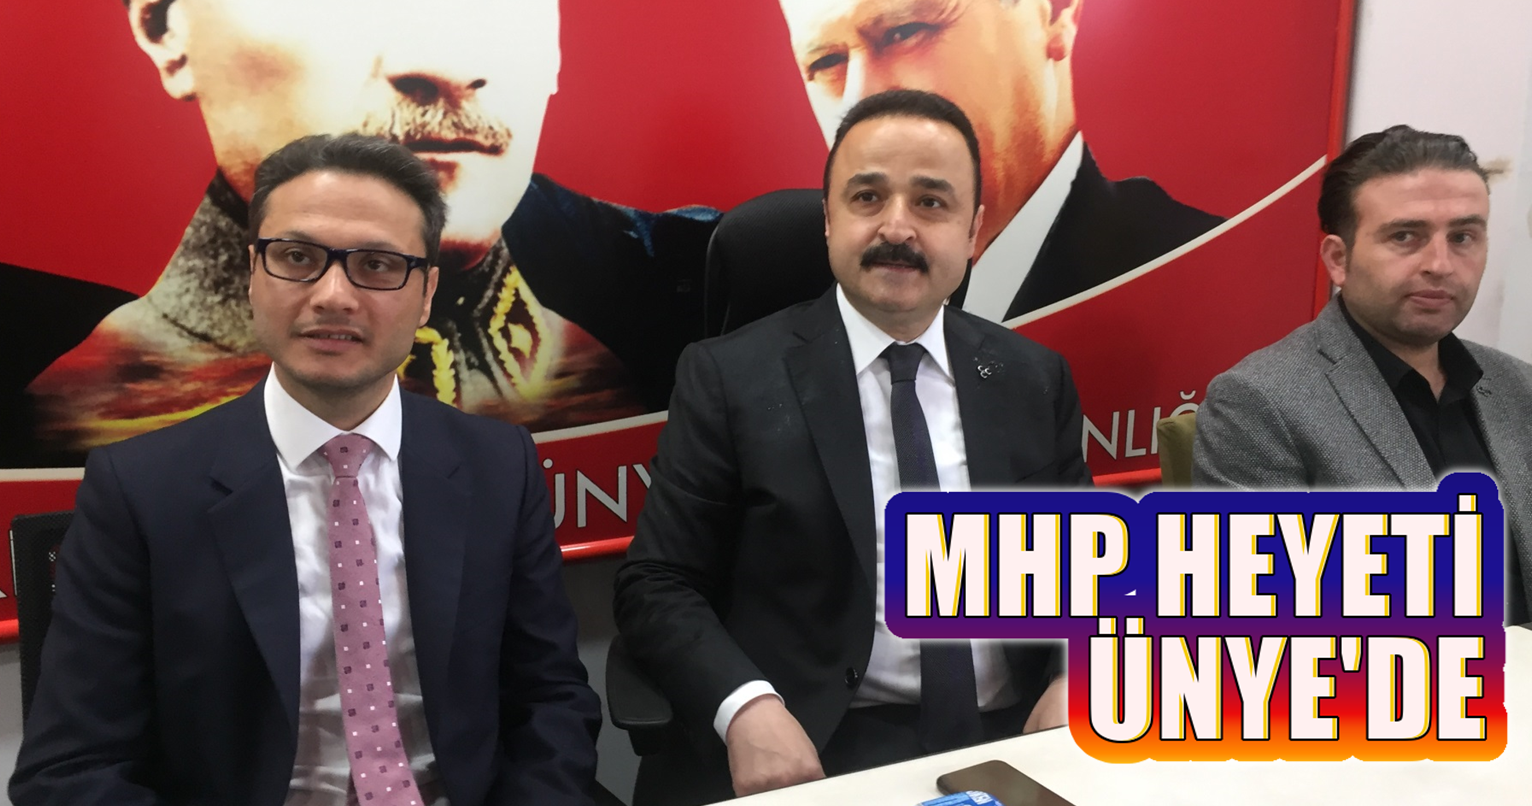 MHP Heyeti Ünye’de: “Cumhur İttifakının Her Türlü Arkasındayız”